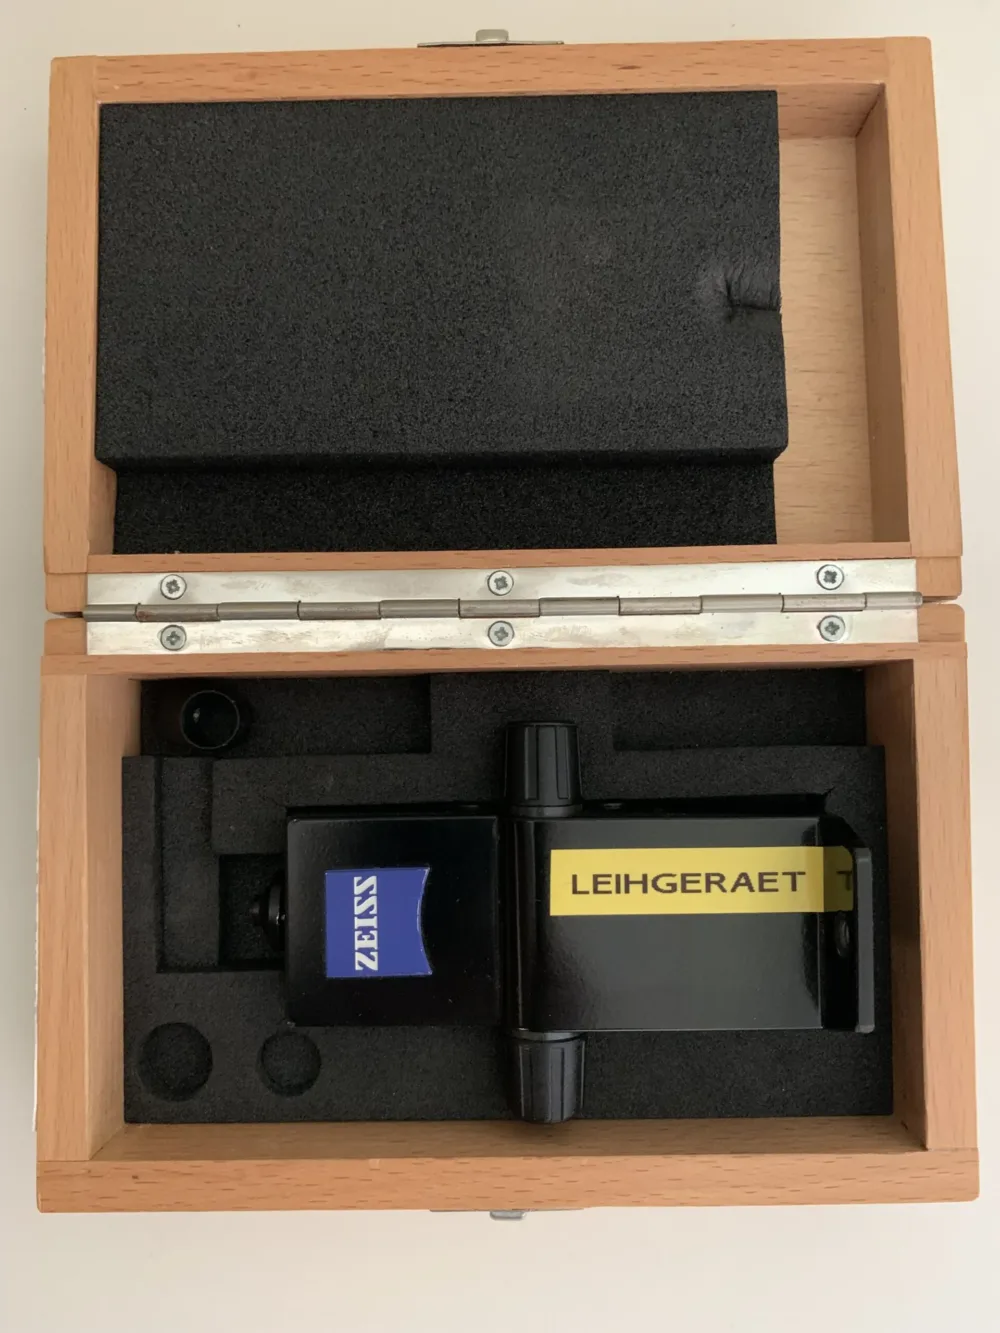 Zeiss Applanation tonometer